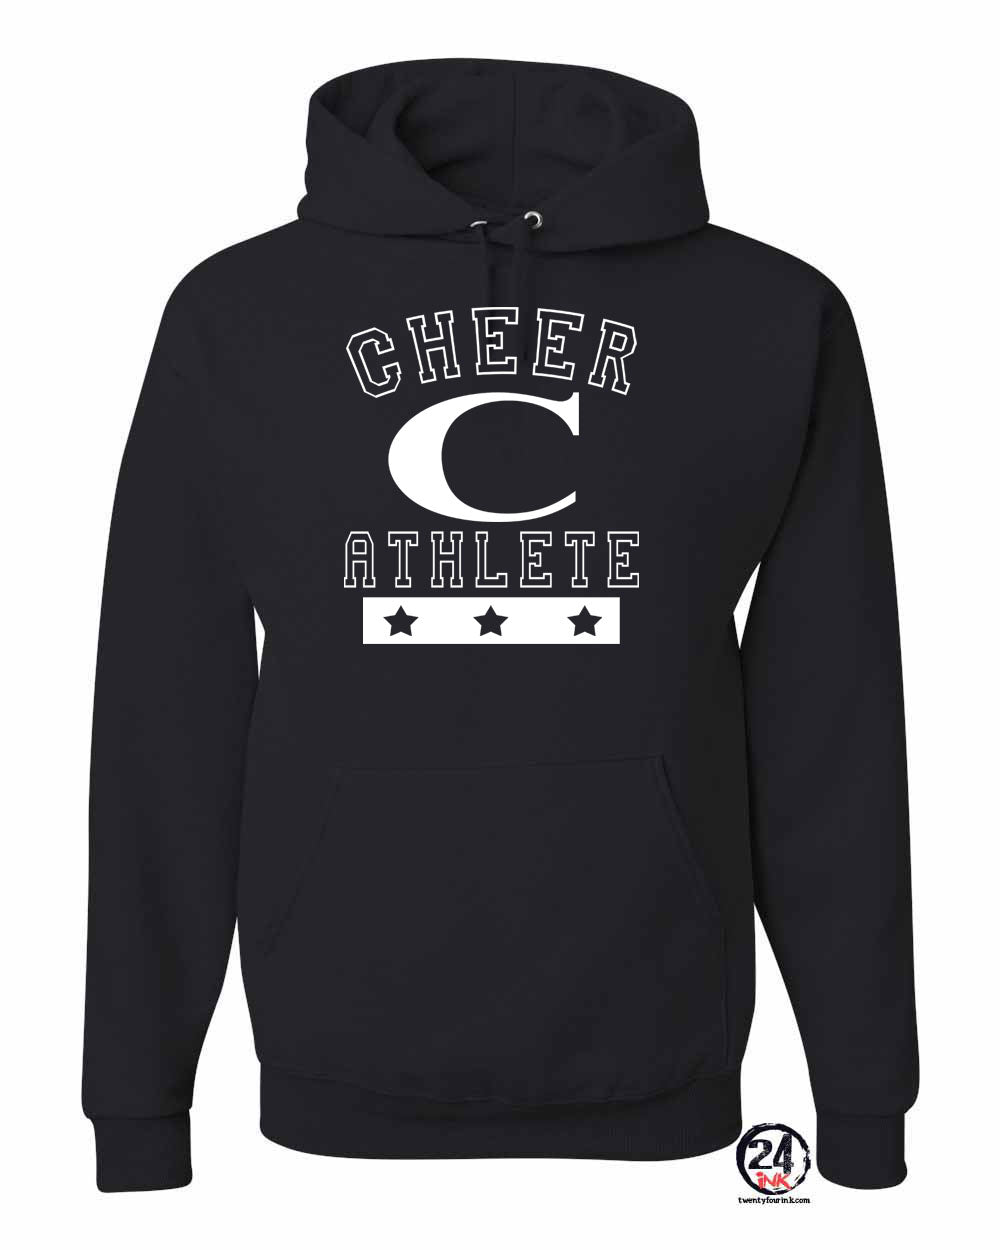 Cheer Athlete Hooded Sweatshirt